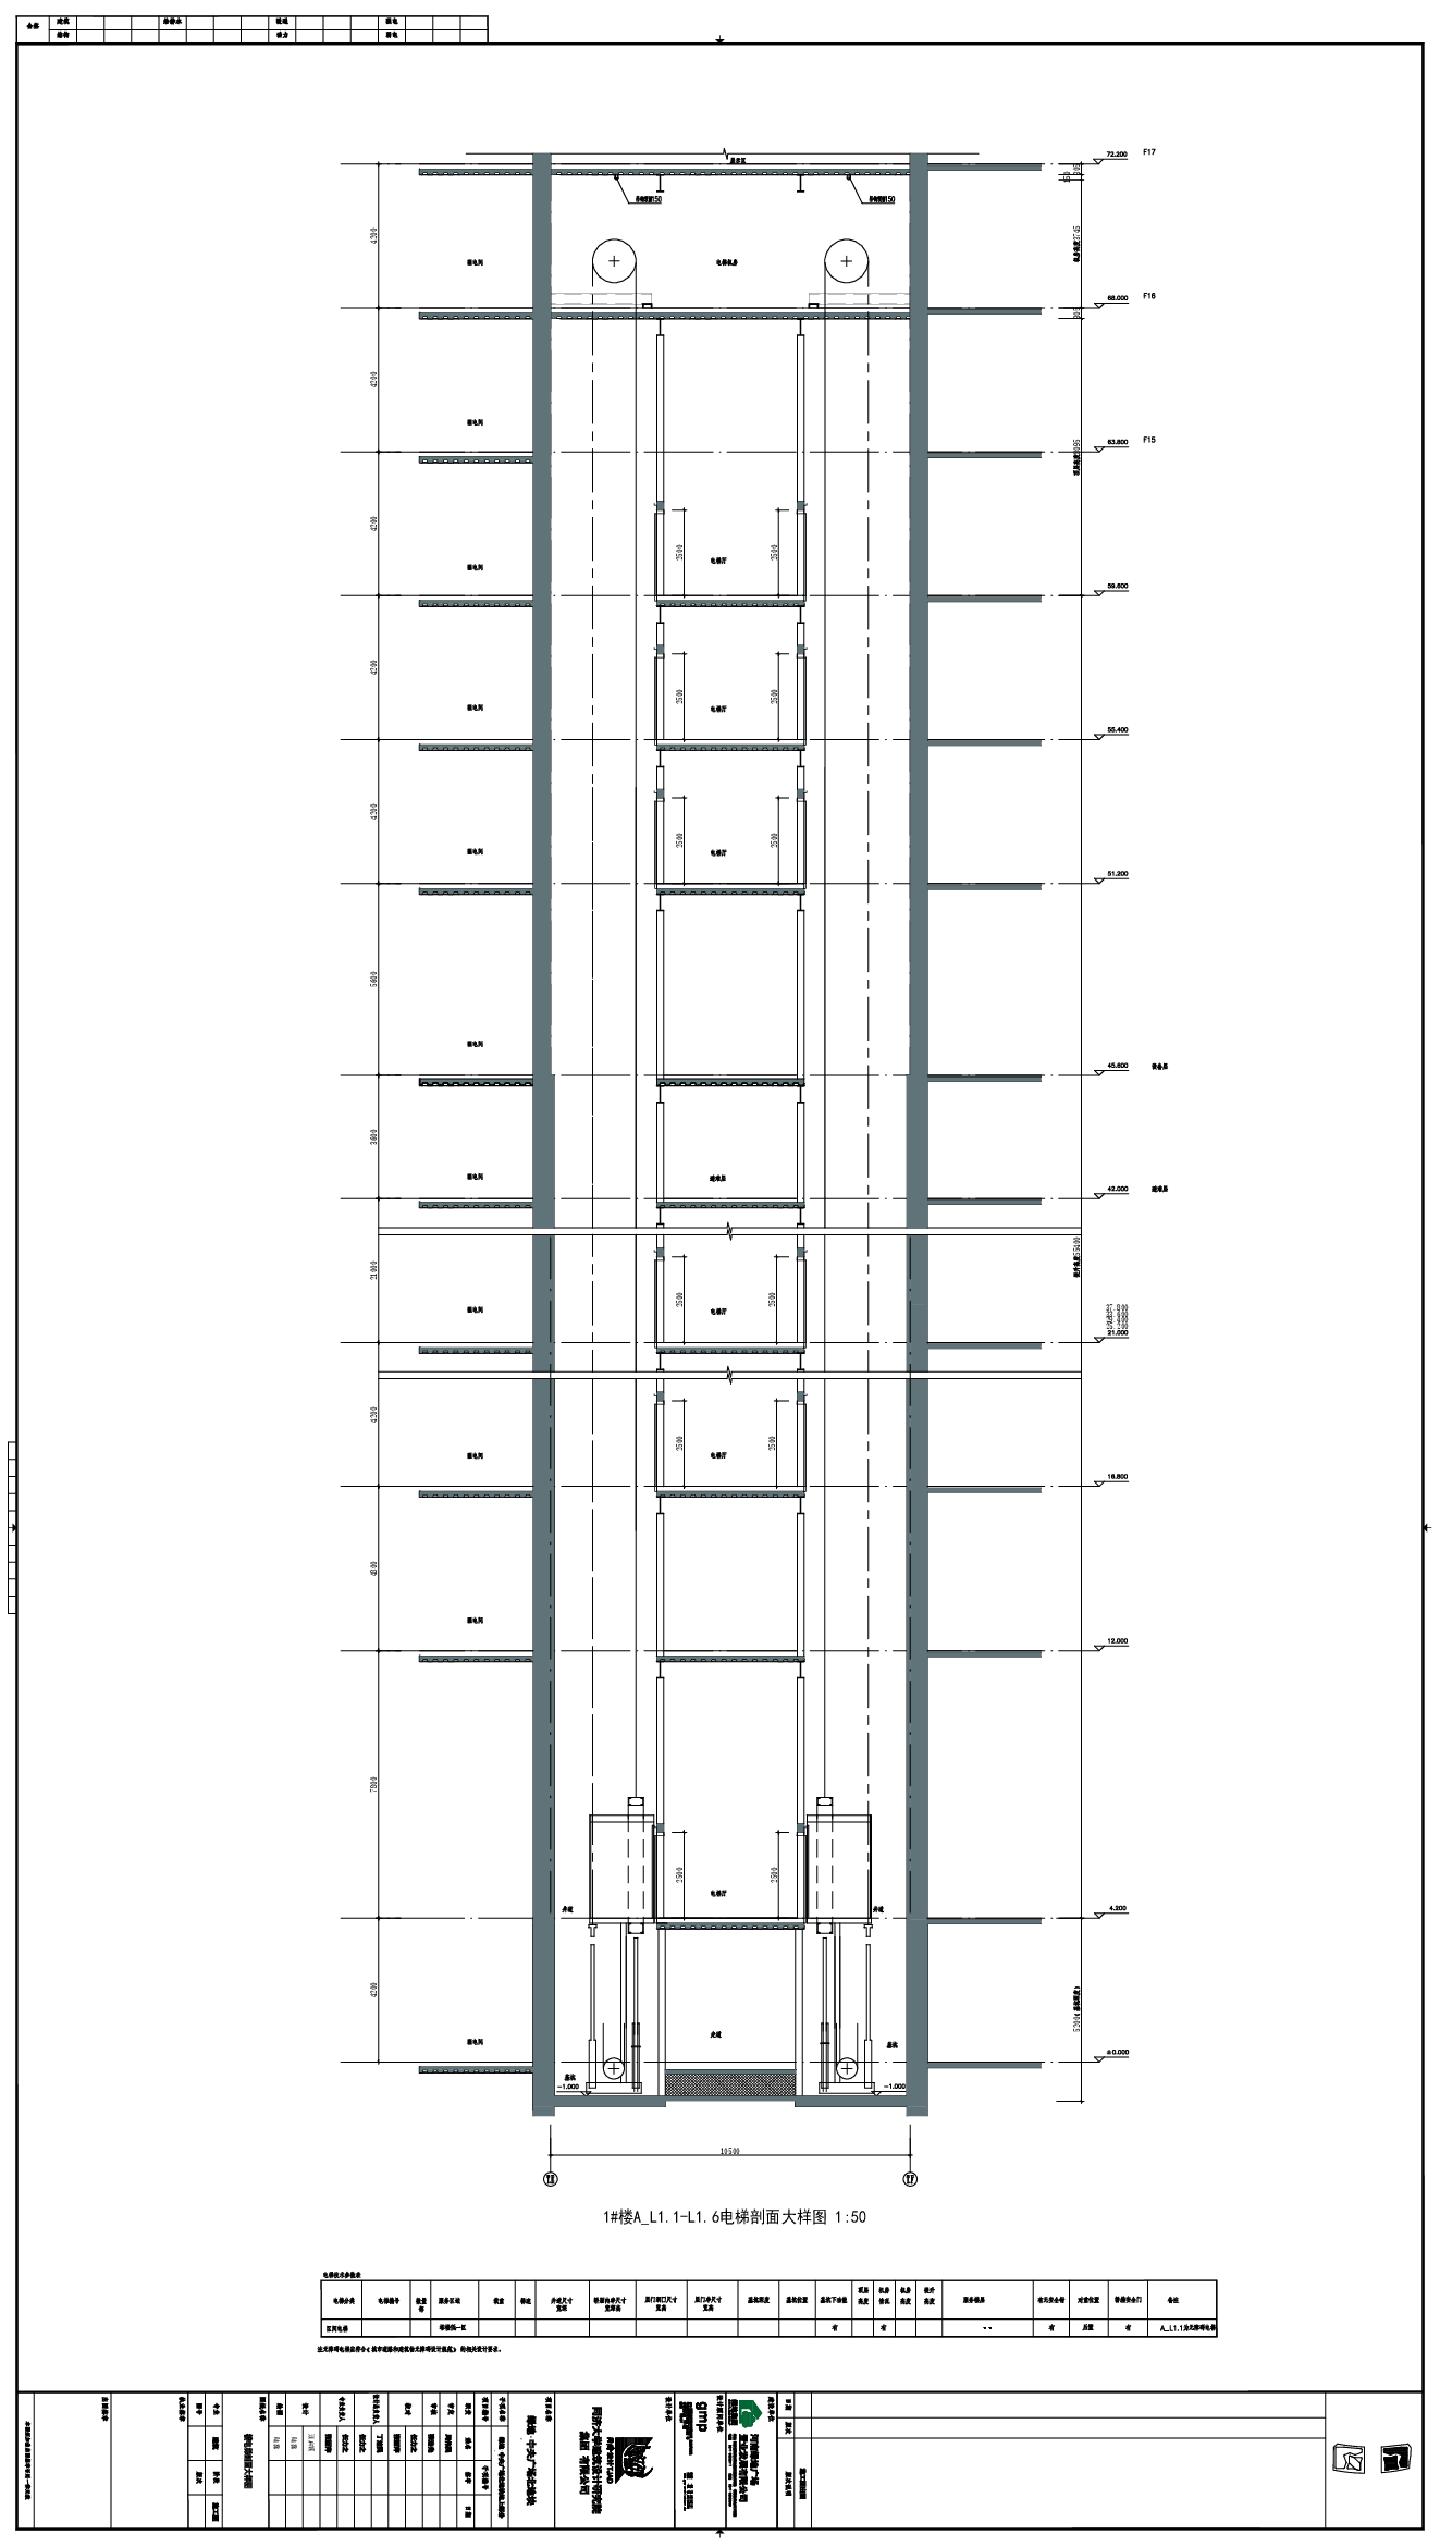 绿地·中央广场北地块地上部分-1号楼电梯剖面大样CAD图